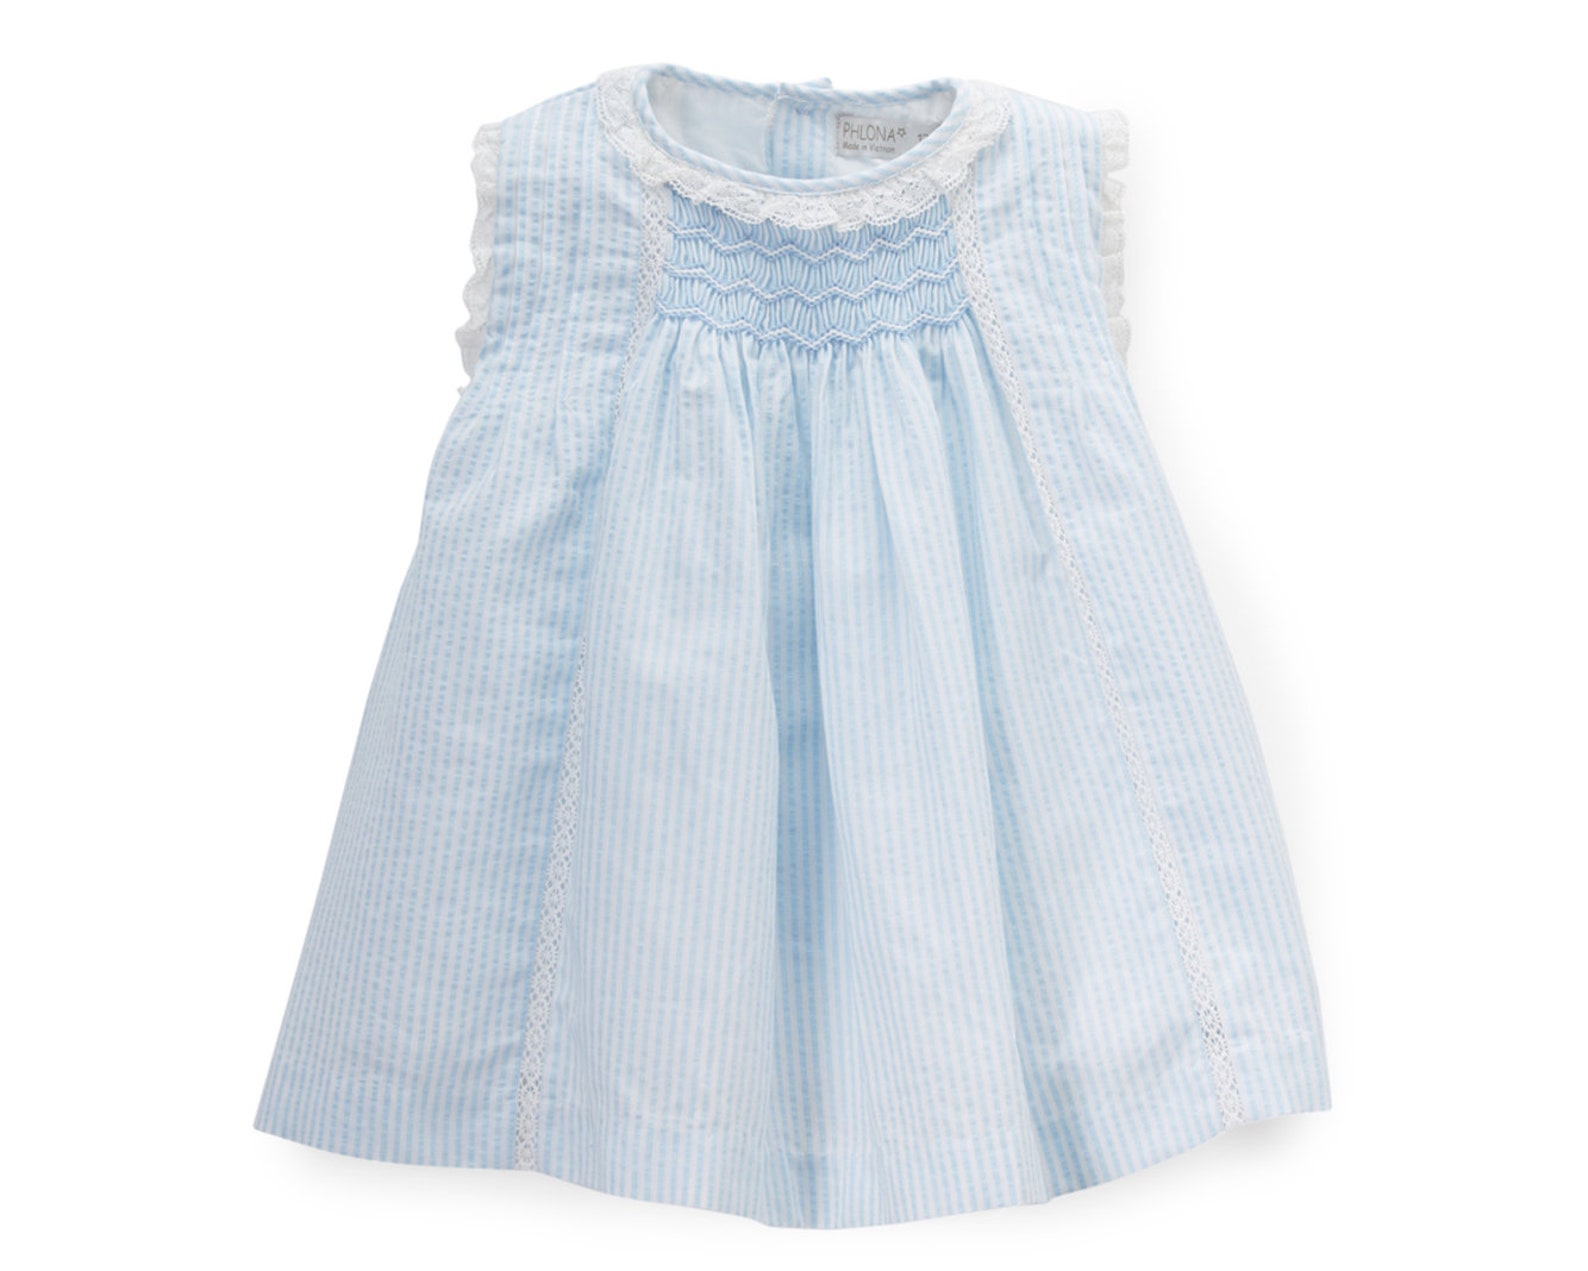 Little Toddler Girl's Hand Smocked Dress in Cotton - Etsy